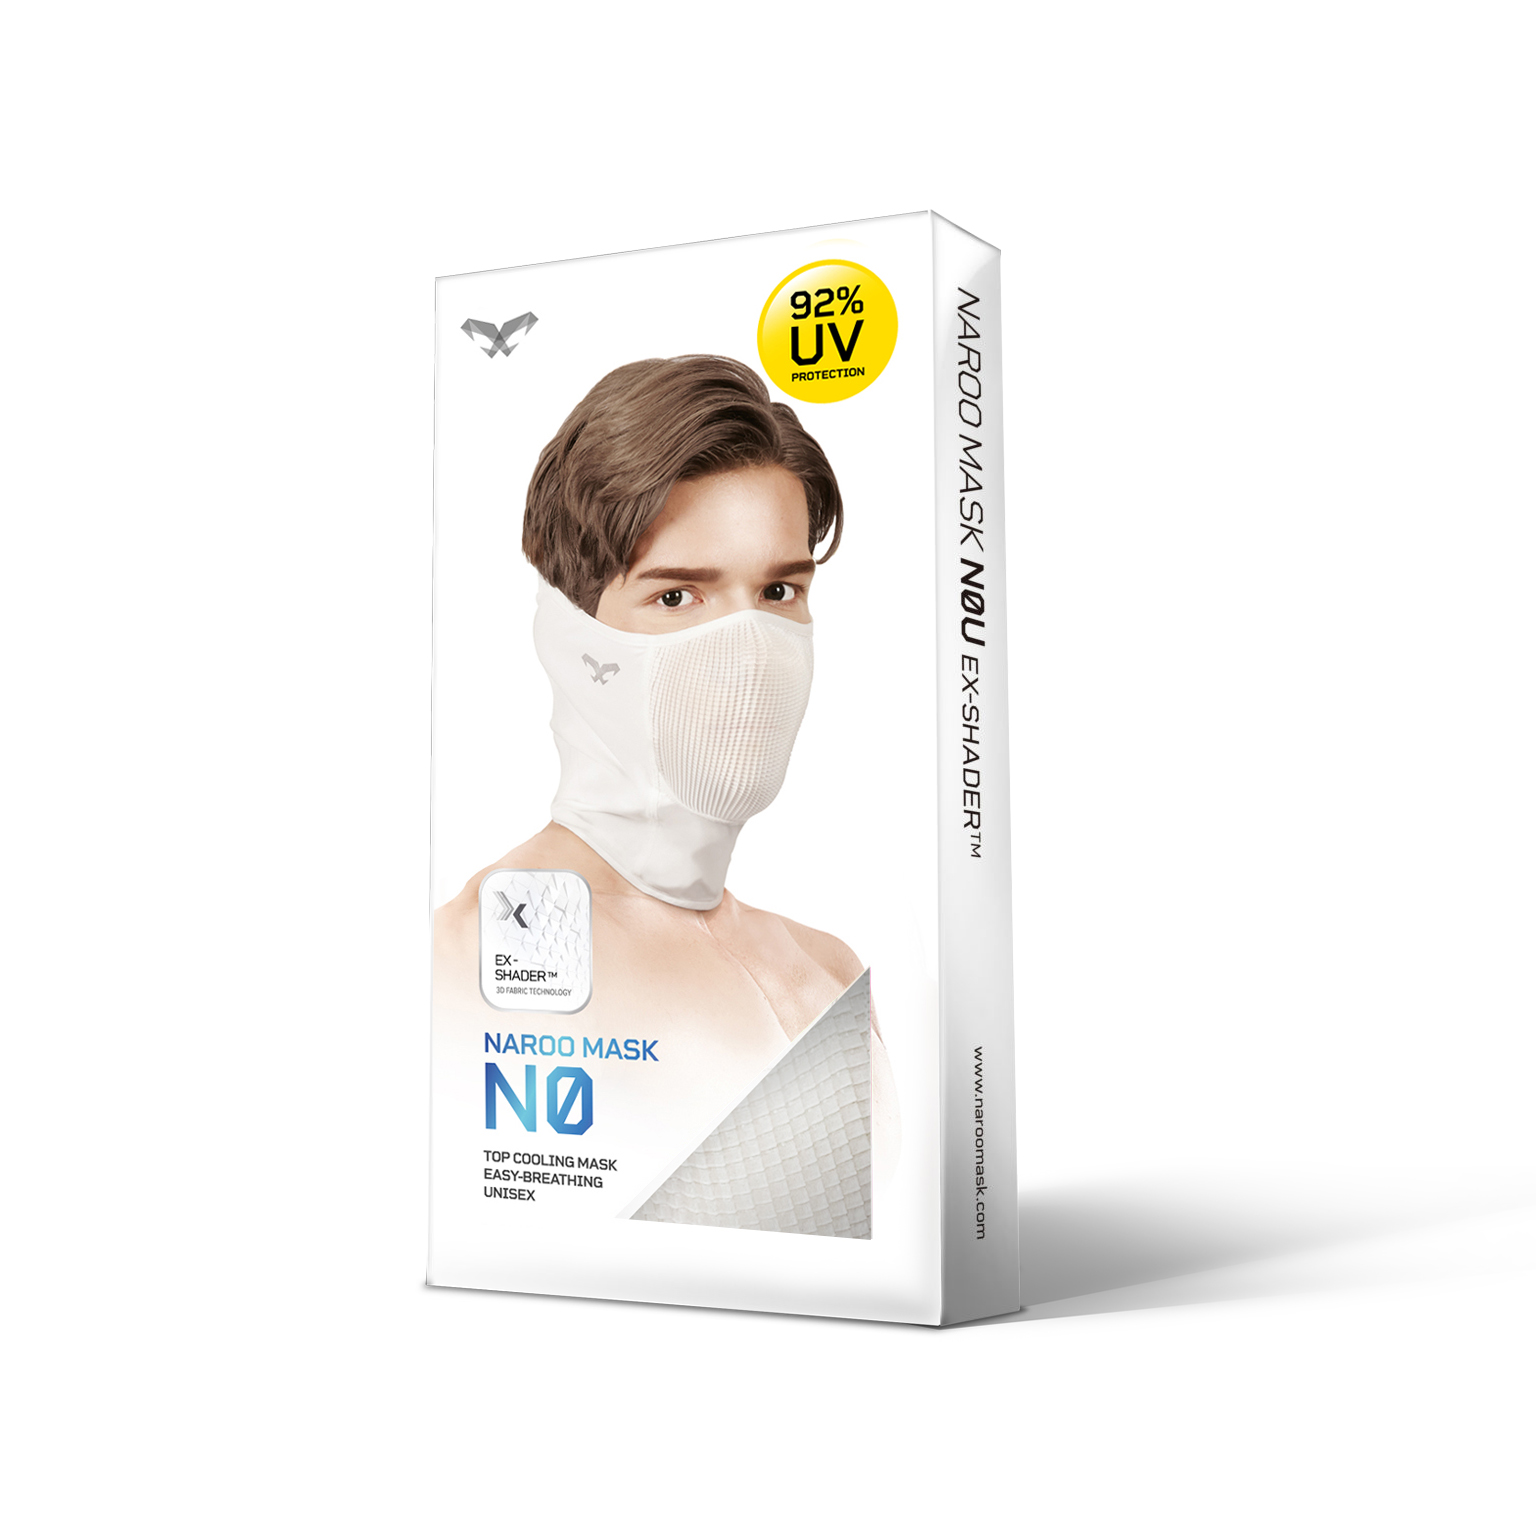 NAROO N0 - paket untuk masker olahraga perlindungan UV untuk lari, bersepeda, memancing di musim panas dan musim semi